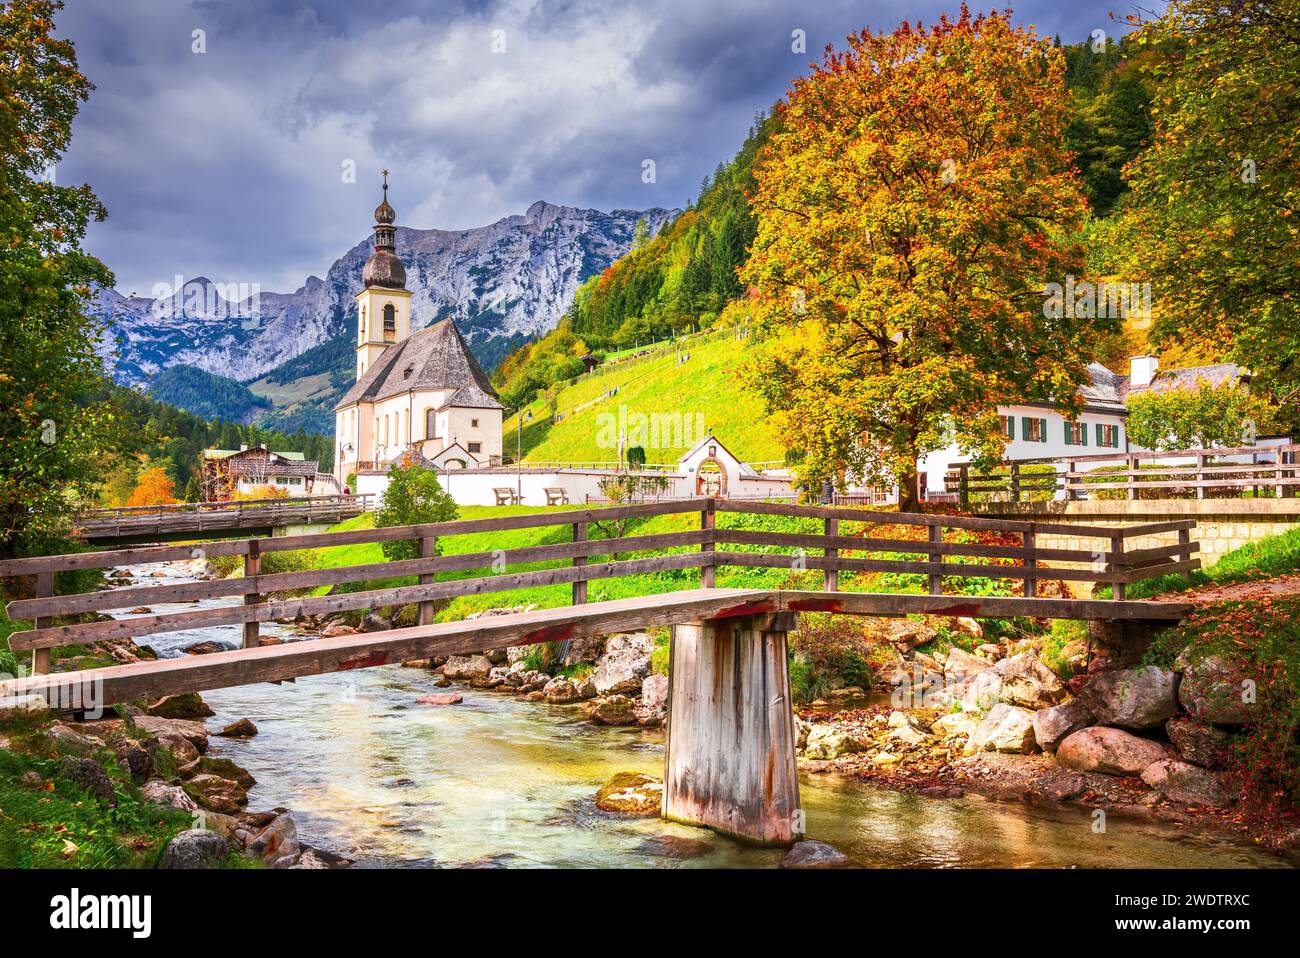 Ramsau, Deutschland. Herbstliche Landschaft Berchtesgadener Land, Bayern mit unglaublichem saisonalen Blick auf die St. Sebastian Kirche und die Ramsauer Ache Stockfoto